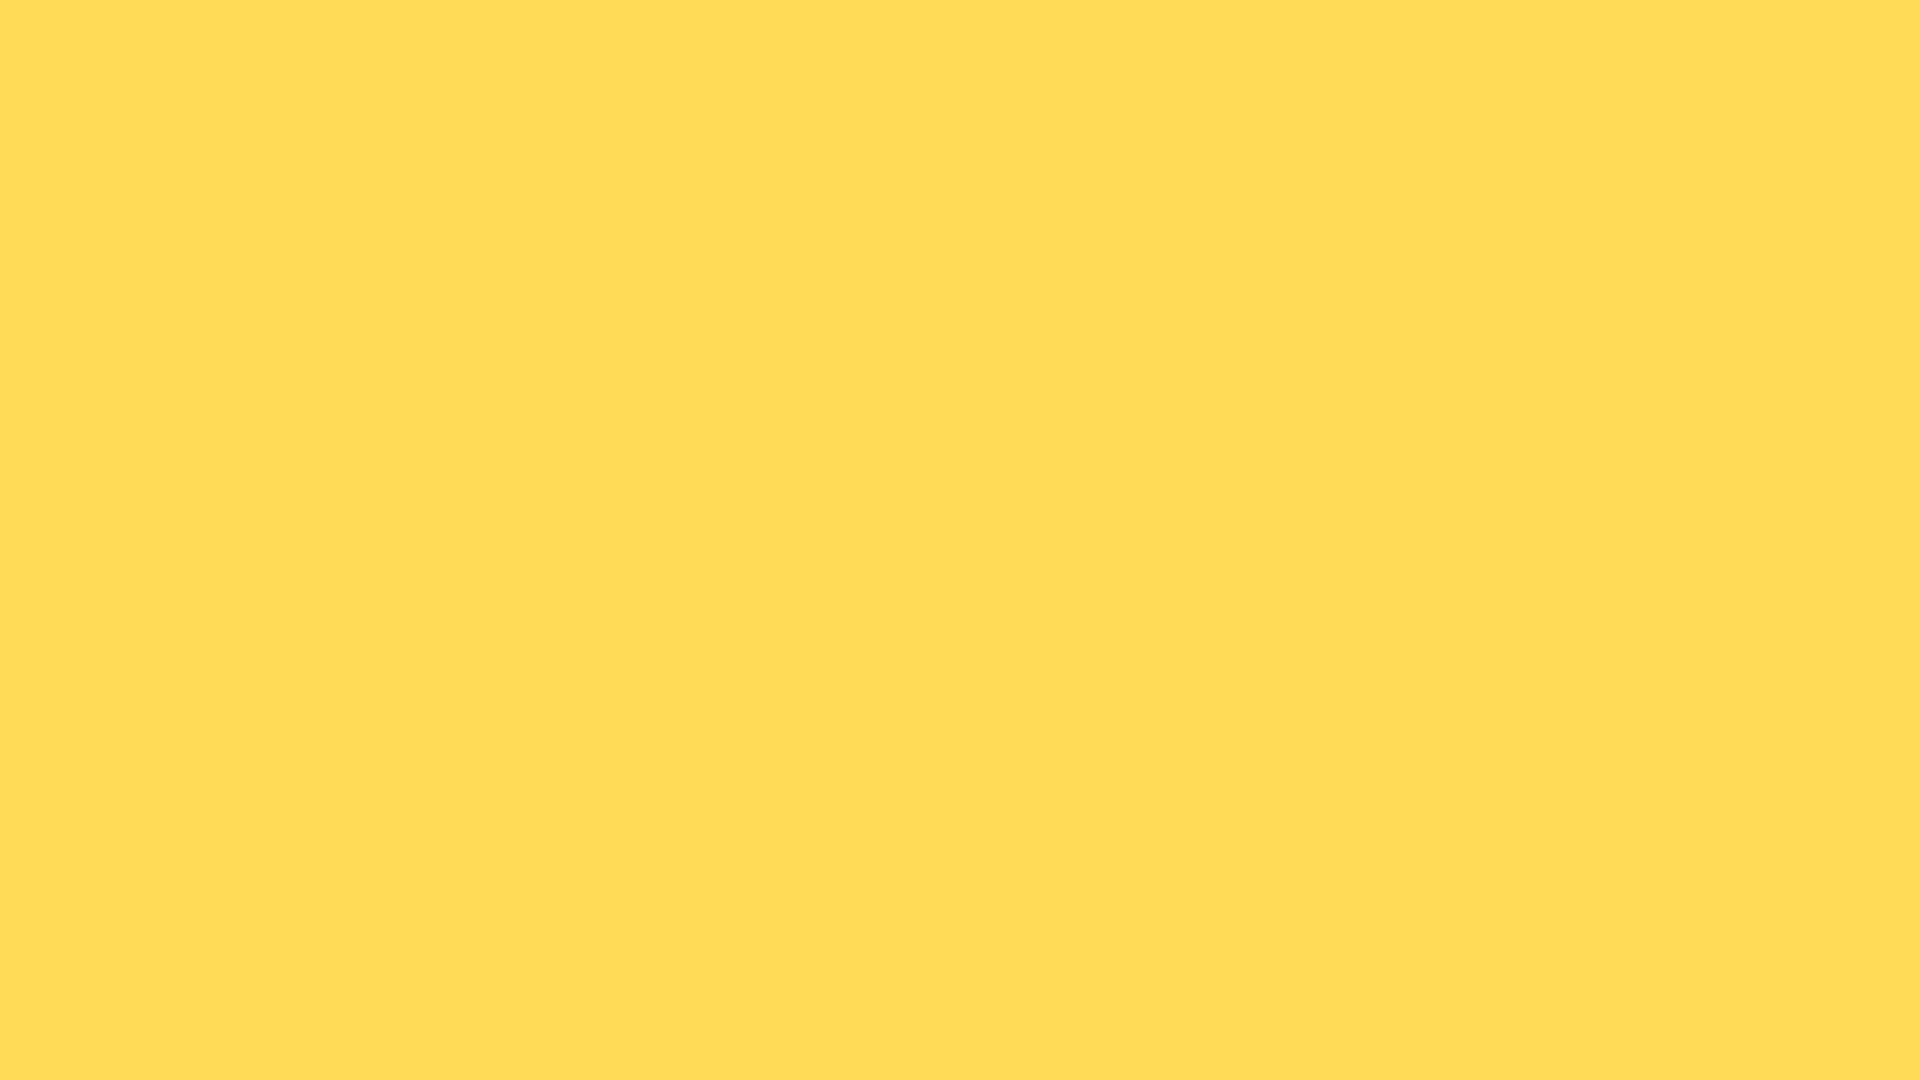 Chào mừng đến với sự thú vị của mã màu vàng gừng, một màu sắc thú vị và độc đáo. Tô điểm cho trang web của bạn với mã màu vàng gừng để tạo ra một bản sắc cá nhân độc đáo. Màu sắc này không chỉ sang trọng, tinh tế mà còn mang lại sự ấm áp và hạnh phúc đến với mọi người.